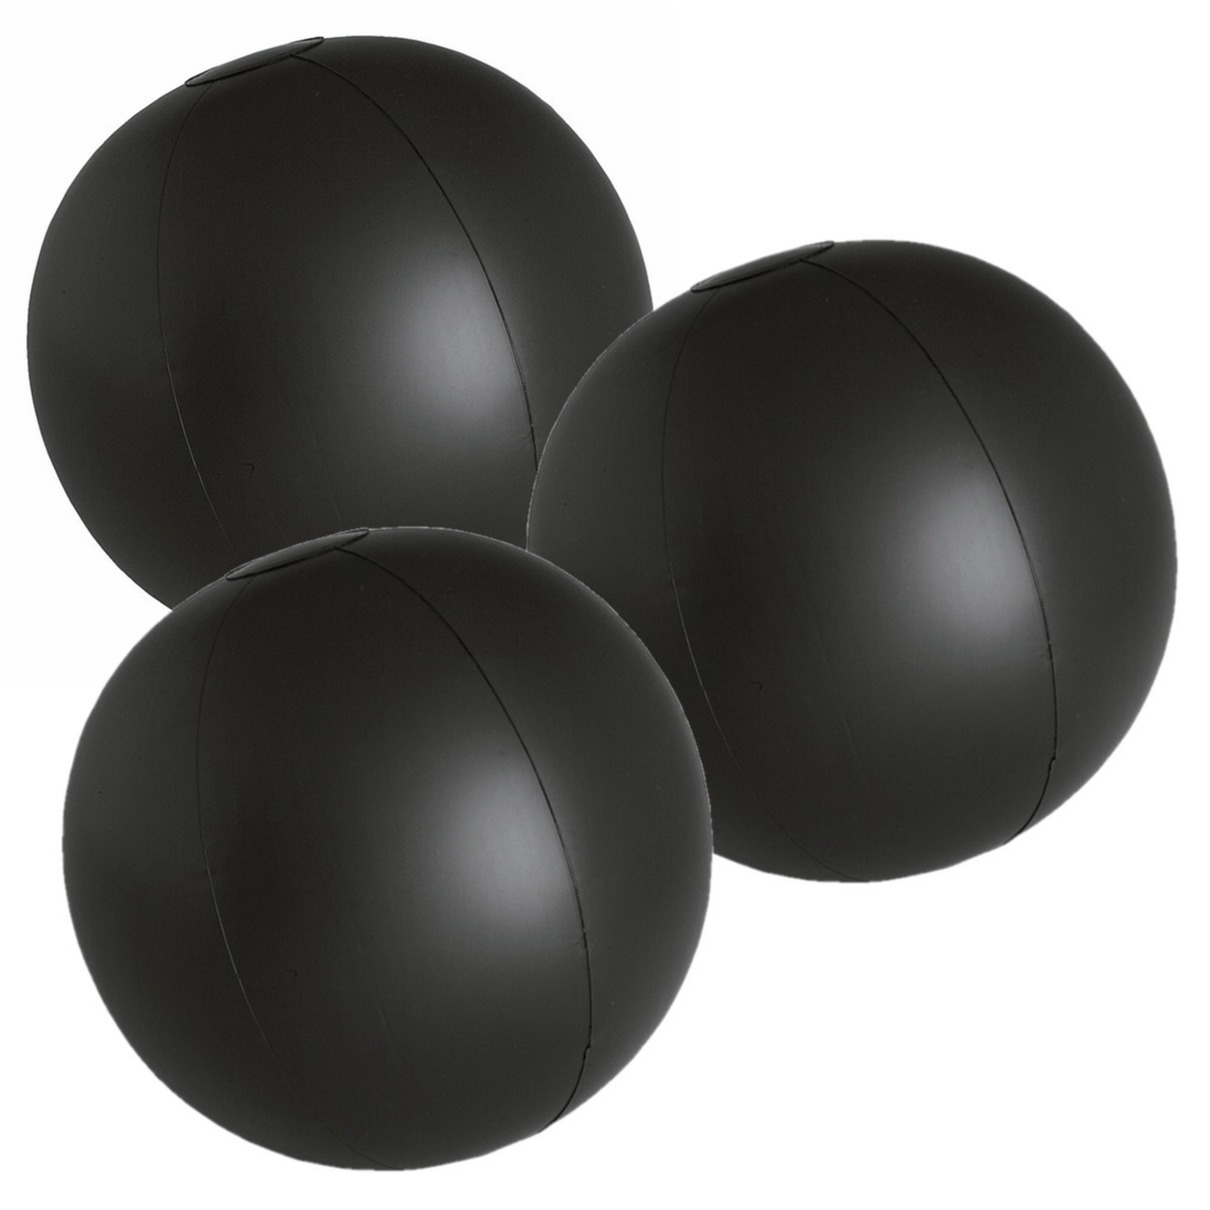 6x stuks opblaasbare zwembad strandballen plastic zwart 28 cm -